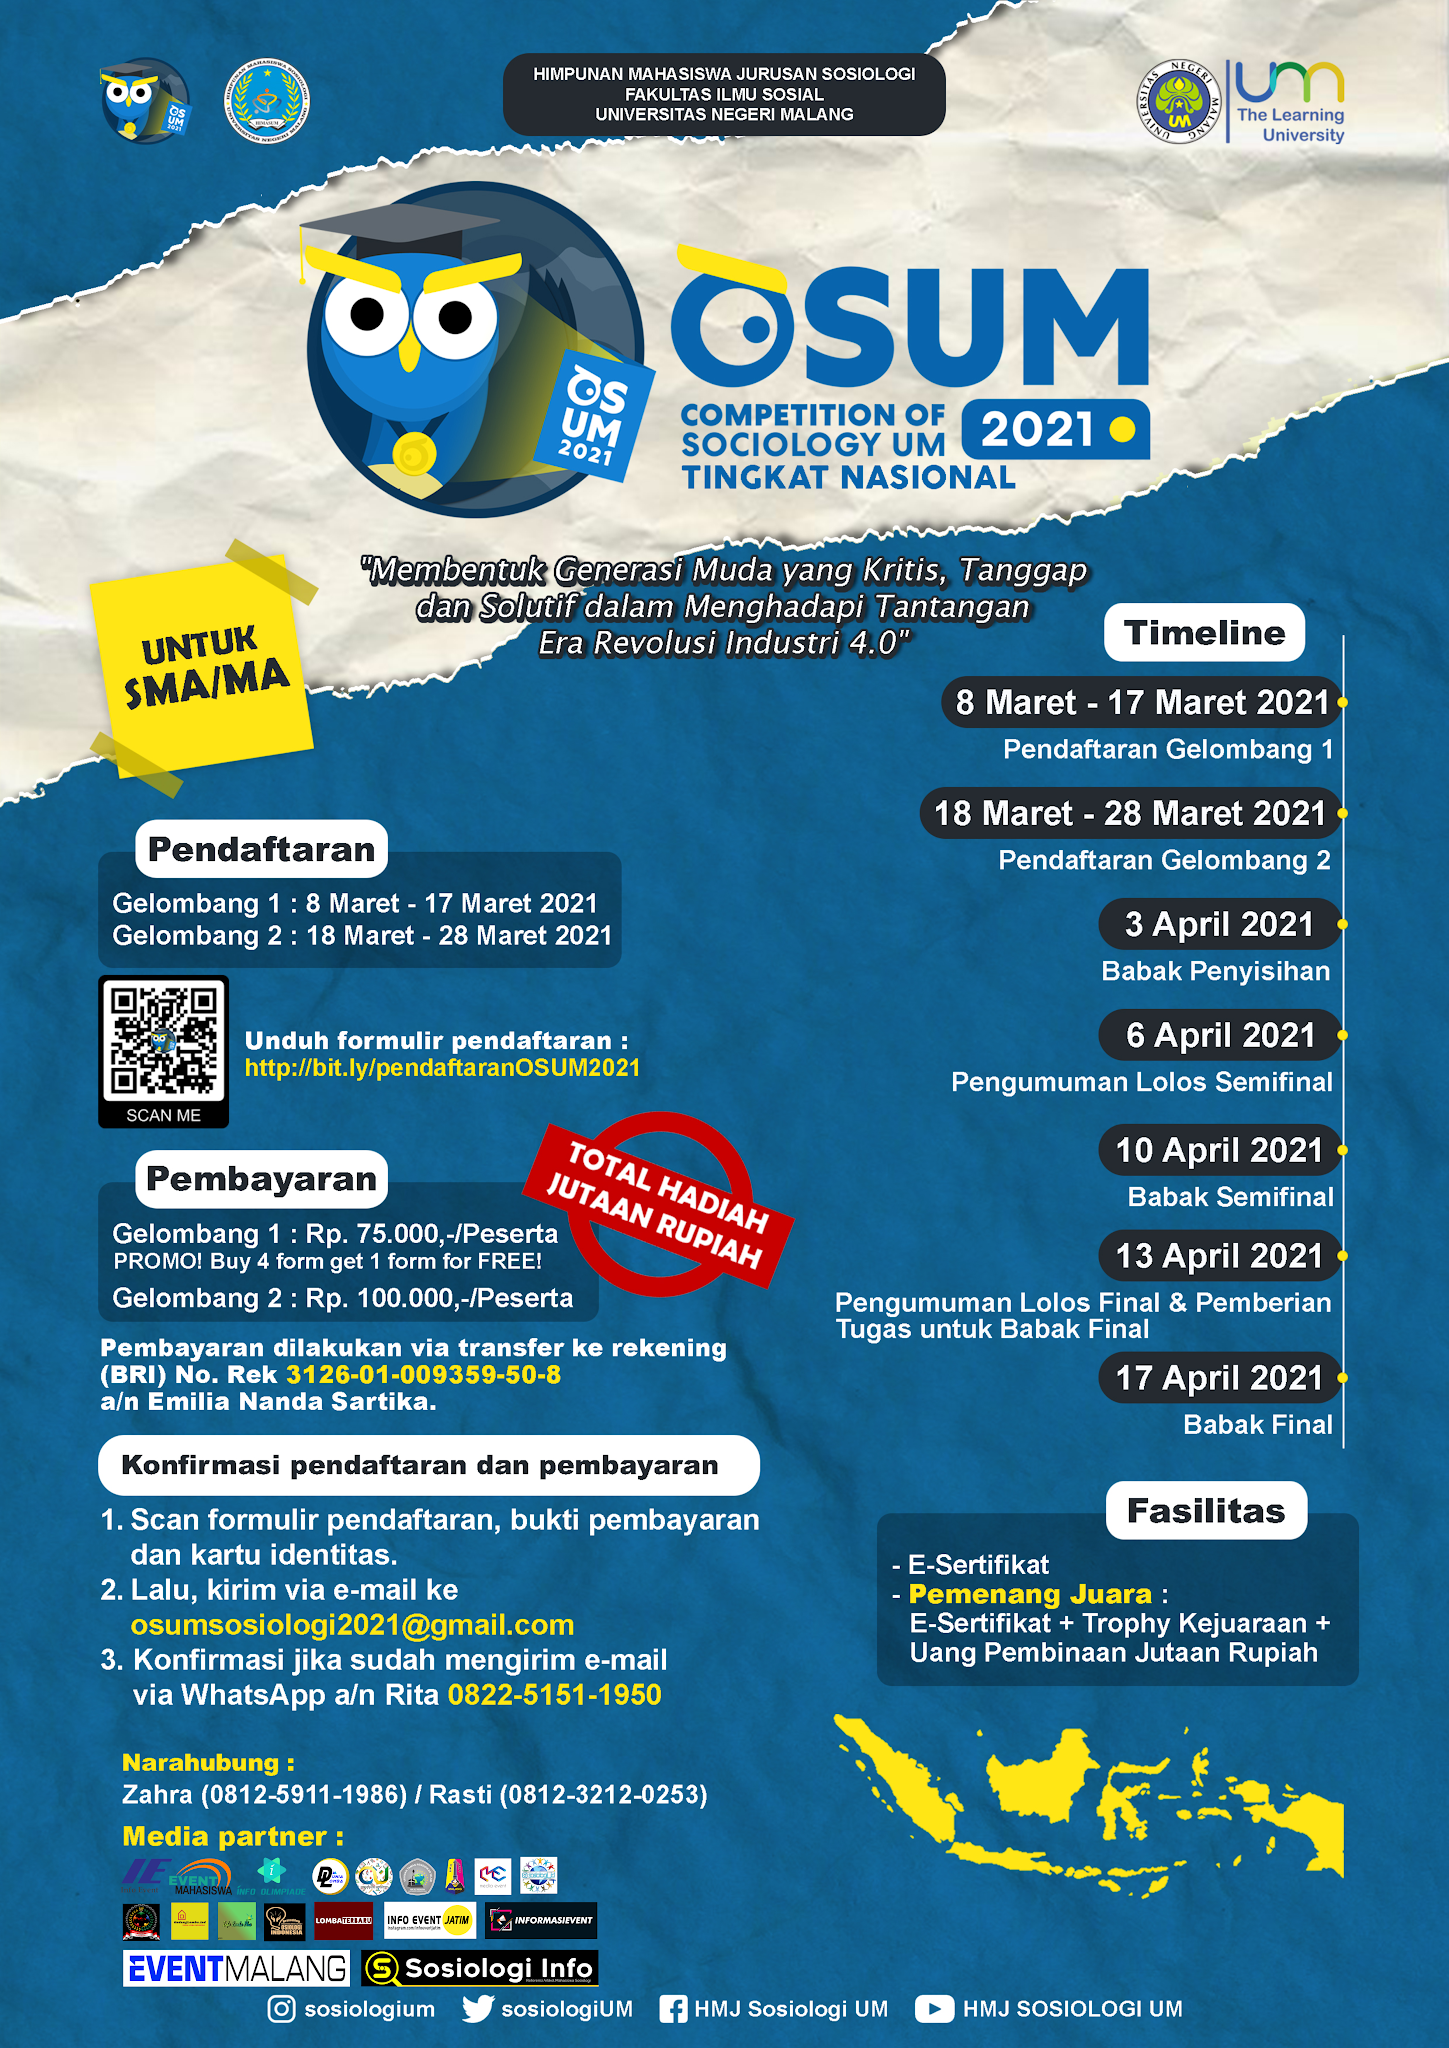 Dear Pelajar SMA/MA se-Indonesia, Info Lomba Sosiologi, Total Hadiah Jutaan Rupiah ! Pendaftaran Akhir 28 Maret 2021